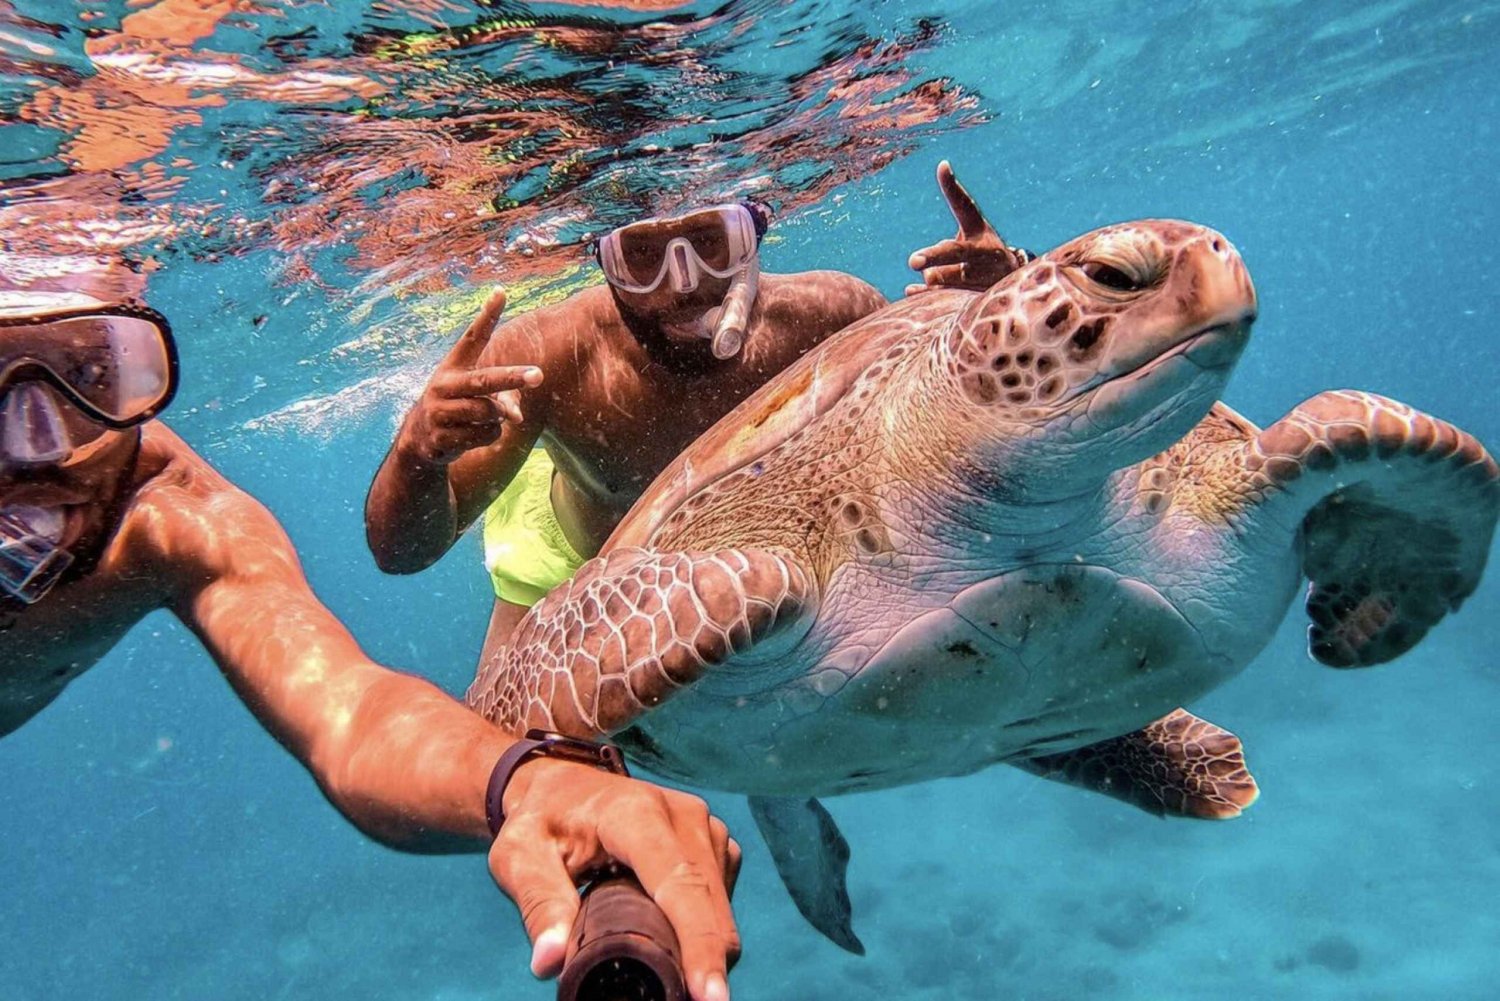 Von Mindelo aus: São Vicentes bezaubernde Meeresschildkröten-Schnorchelmöglichkeiten